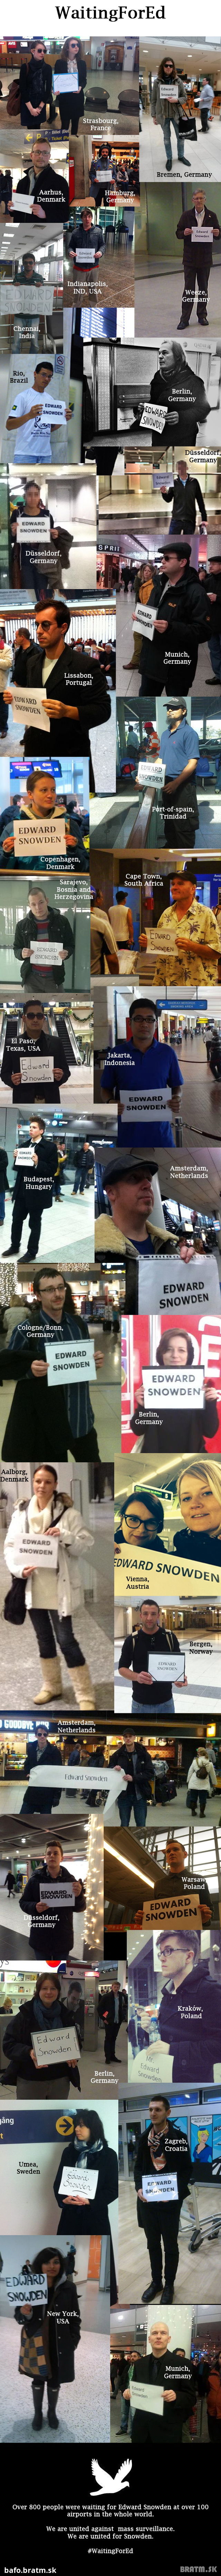 ŠOKUJÚCE: EDWARD SNOWDEN  spôsobil niečo neskutočné! Viac ako 800 ľudí ho očakávalo na letiskách!